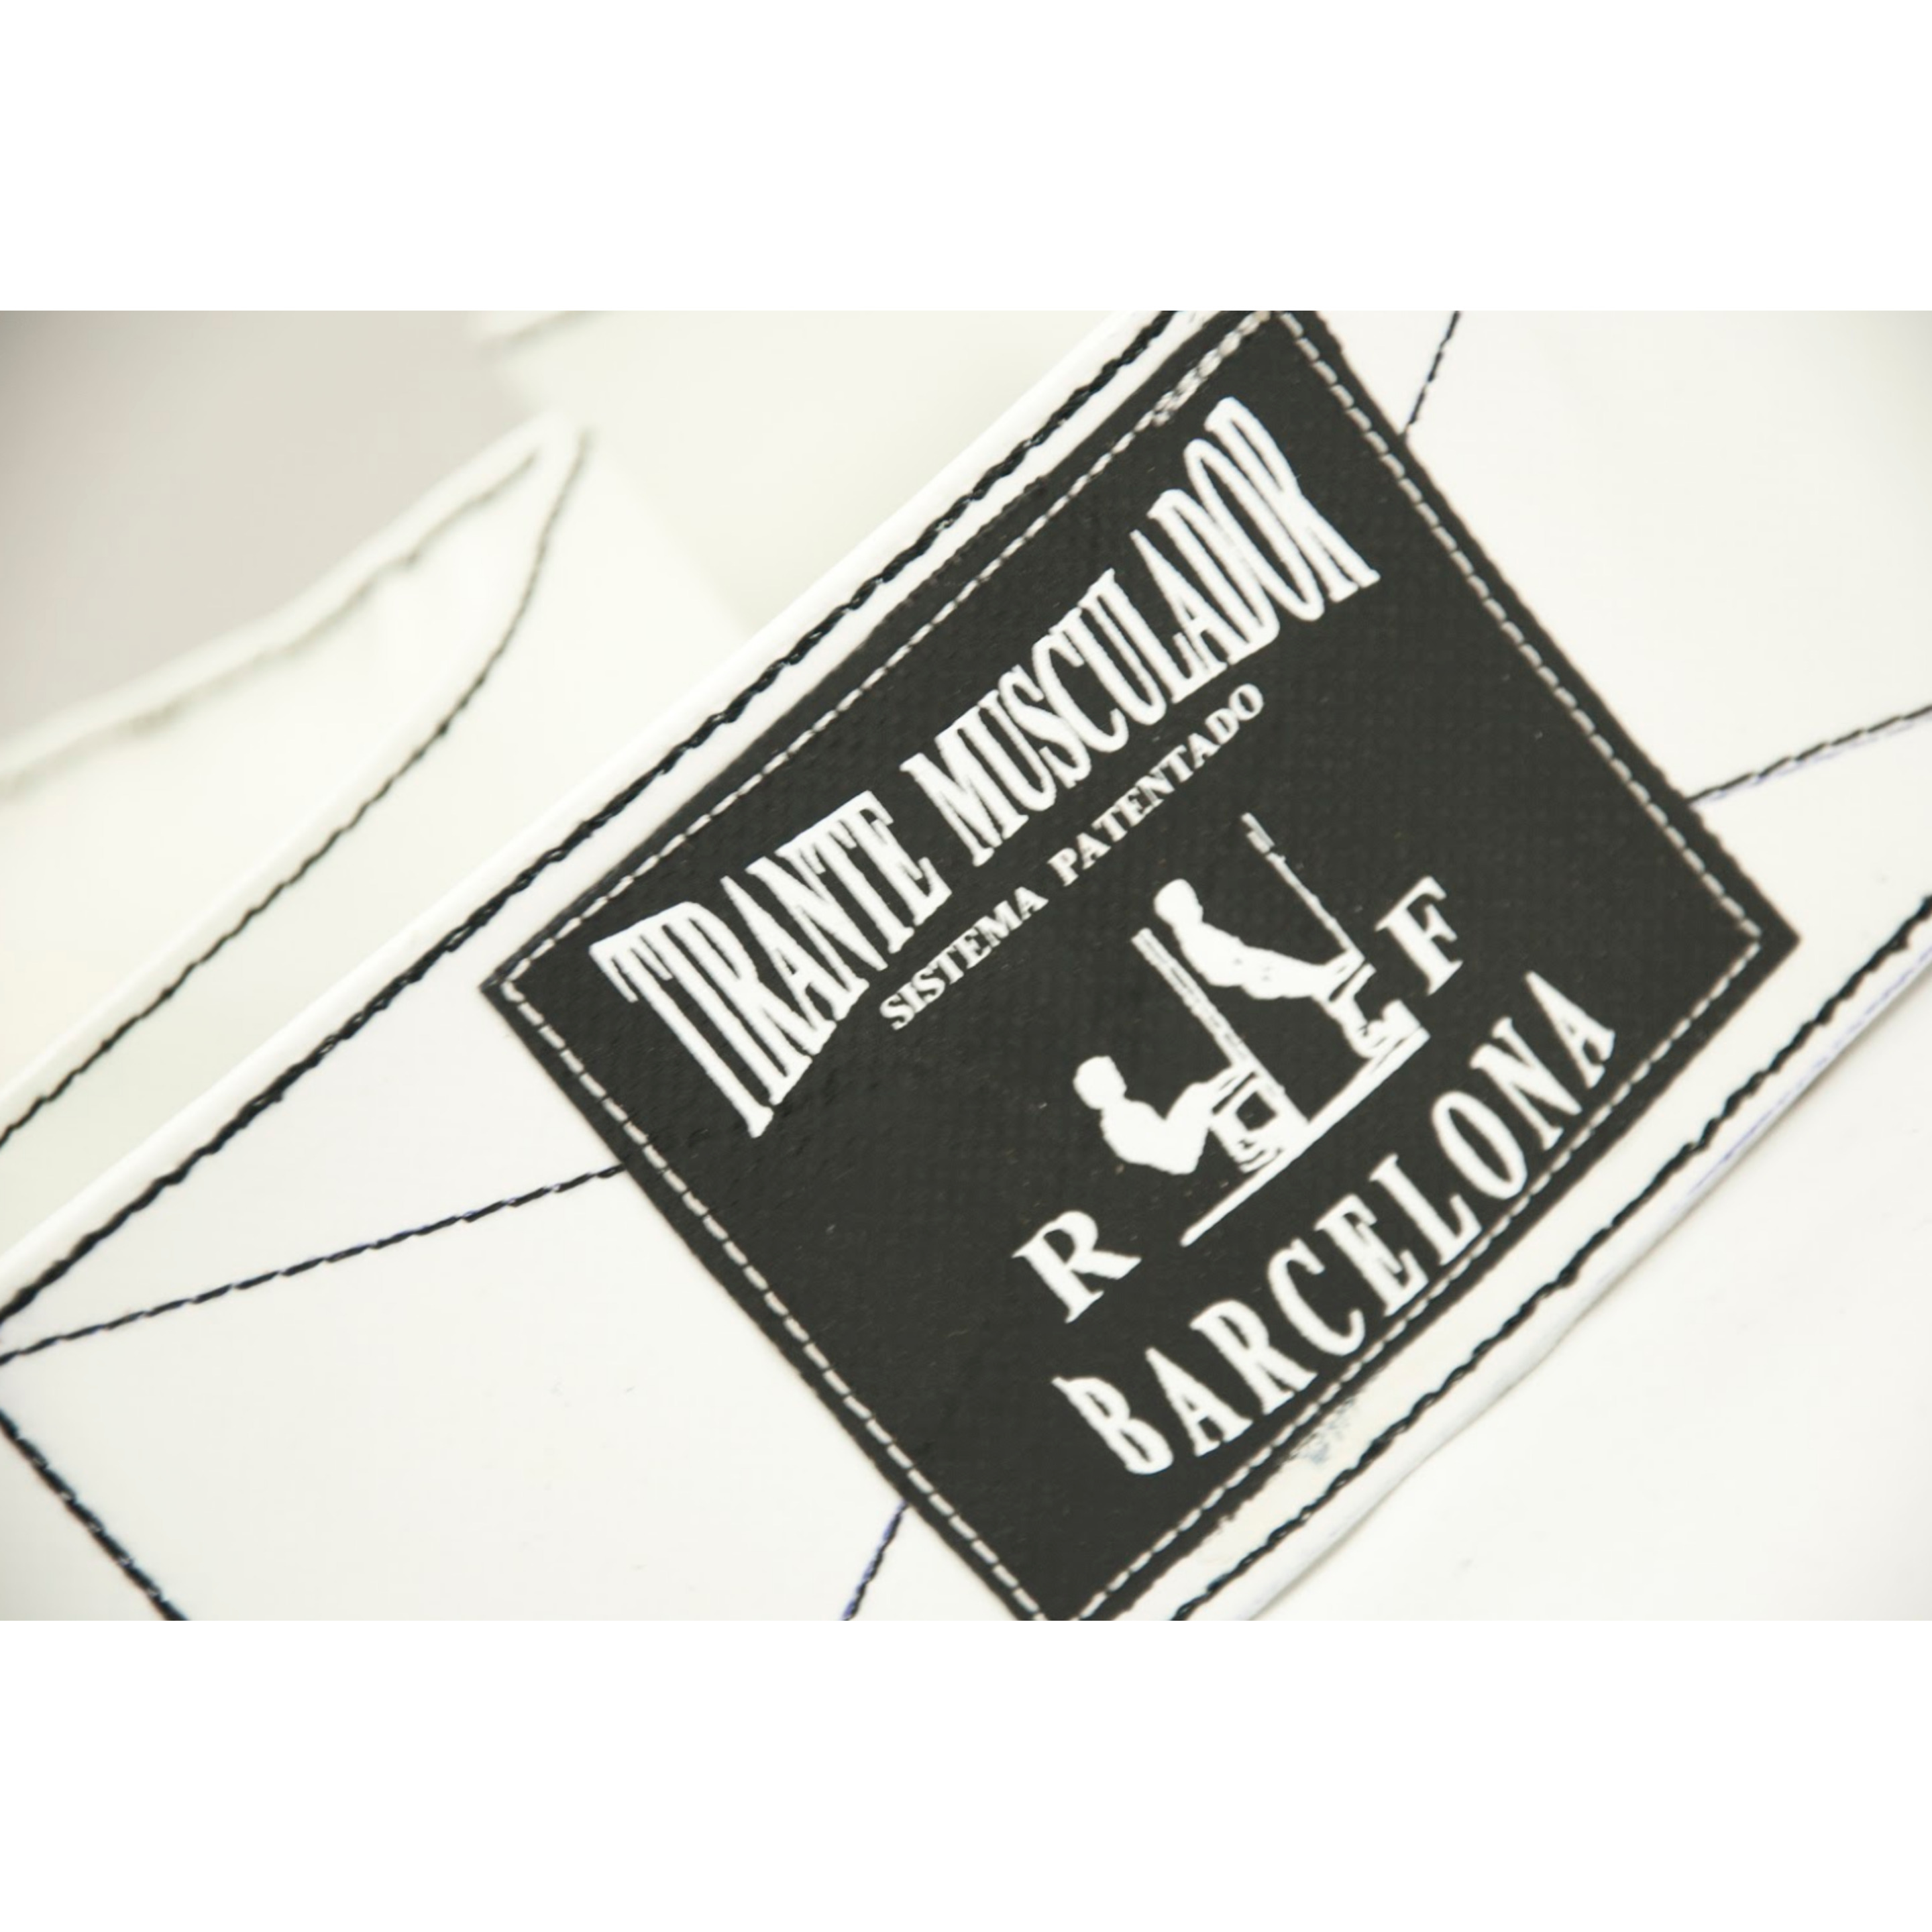 Cinturón Ruso Tmr Limited Edition - Blanco/Negro - Tirante Musculador  MKP